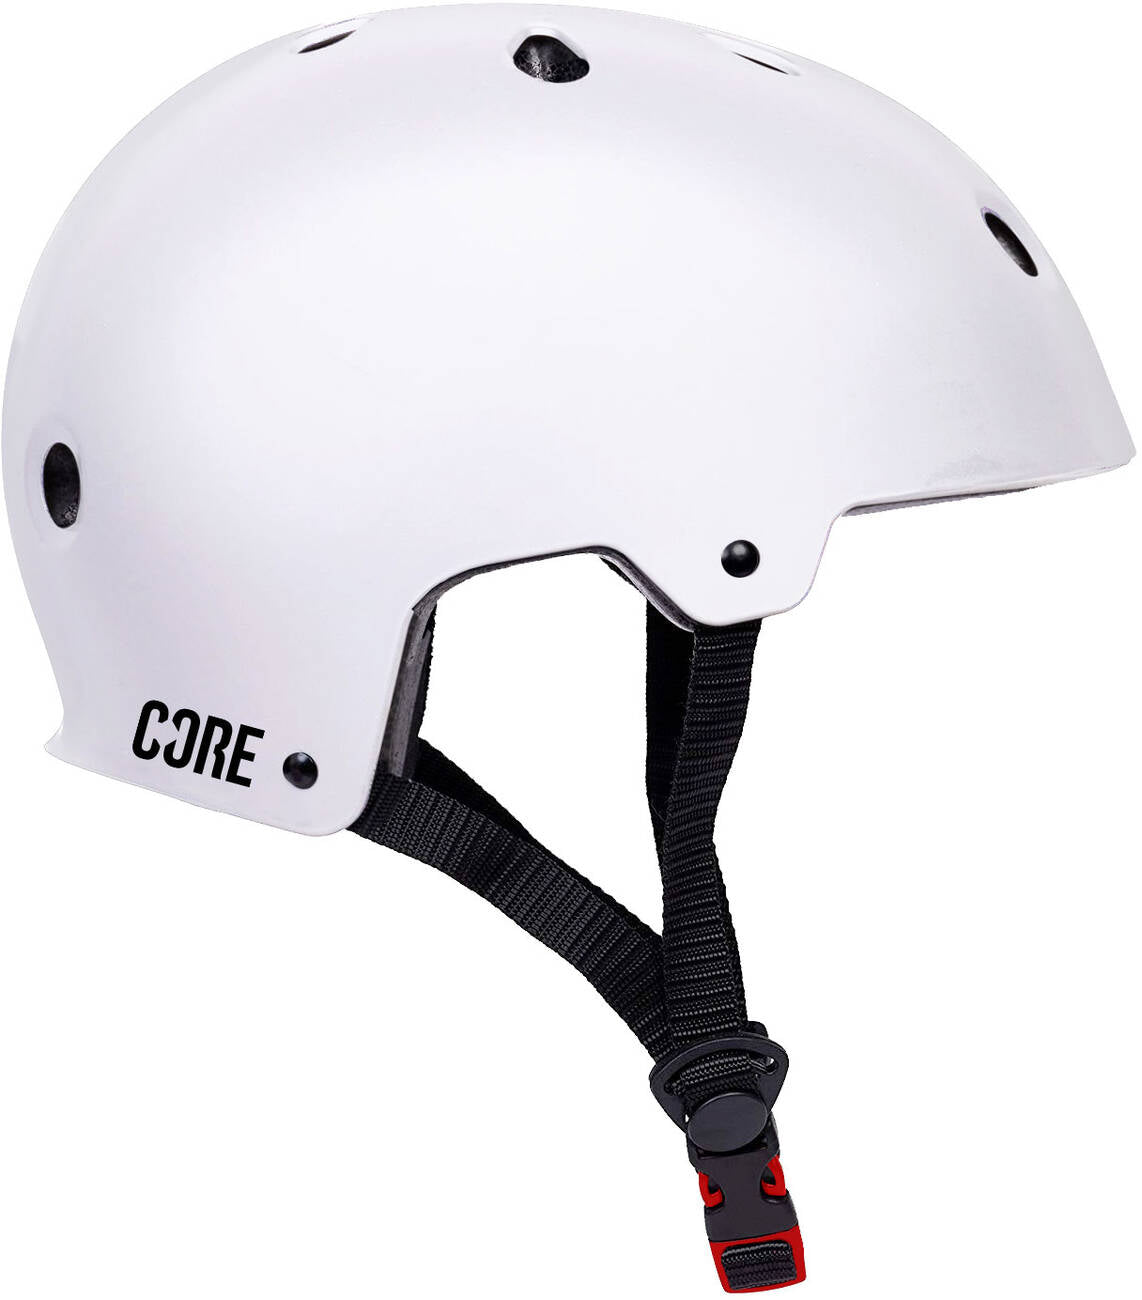 CORE Action Sports Helm Skate und Fahrradhelm weiß